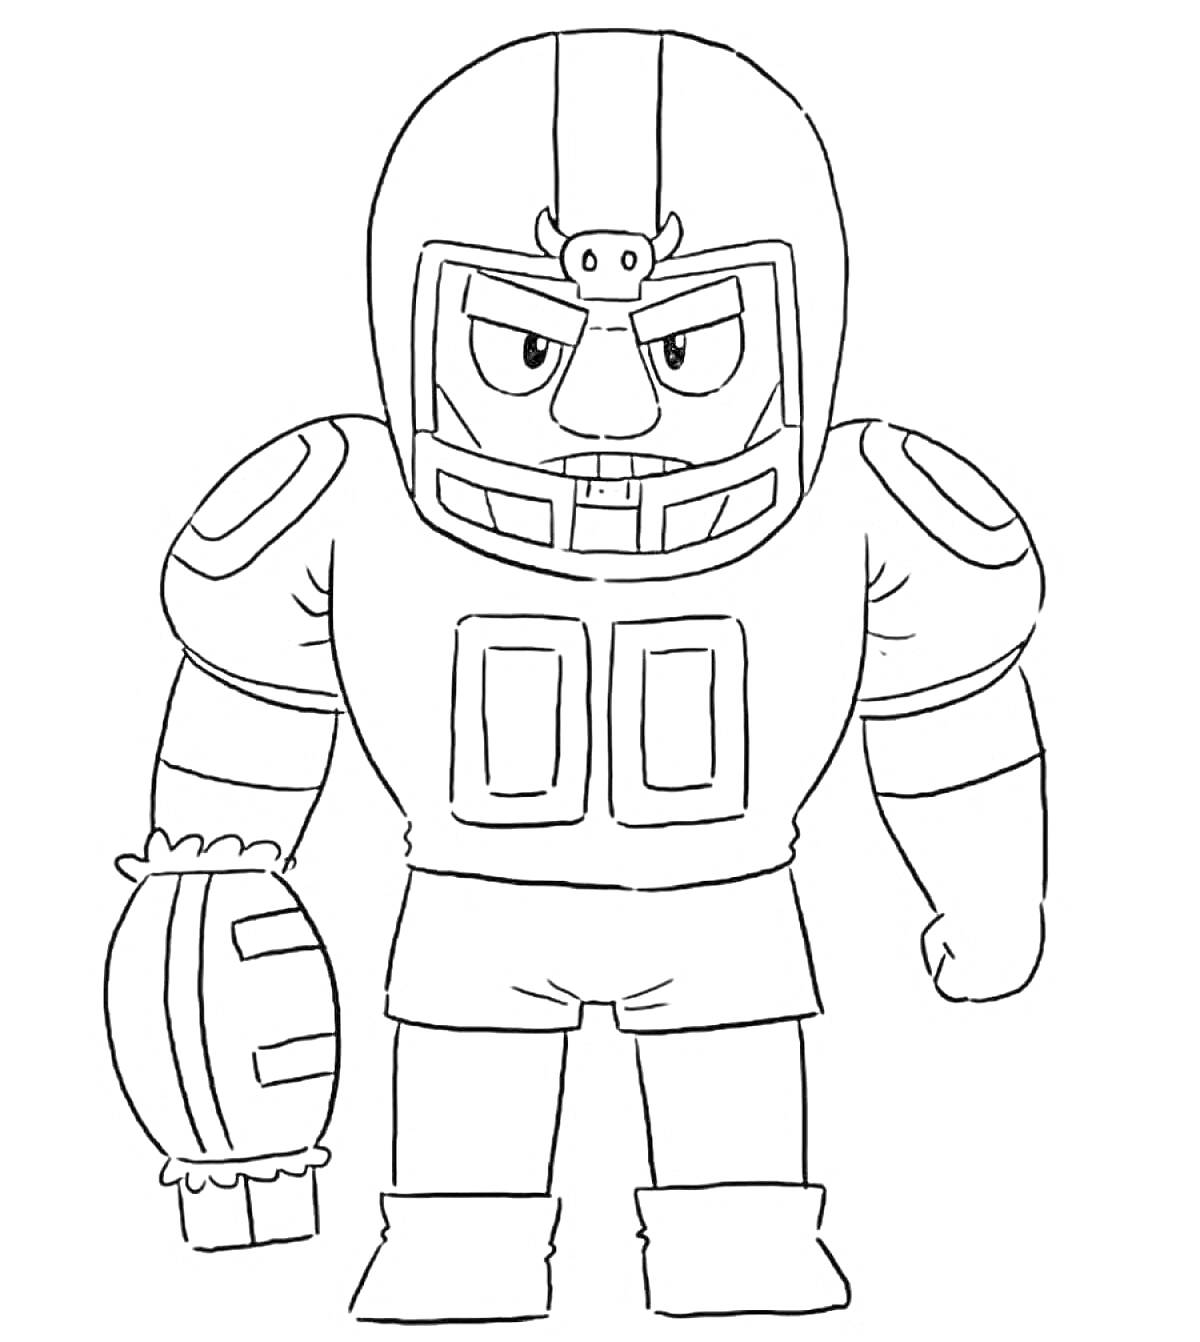 Браво Старс, персонаж в футбольной форме, с защитным шлемом, рукавом и перчаткой